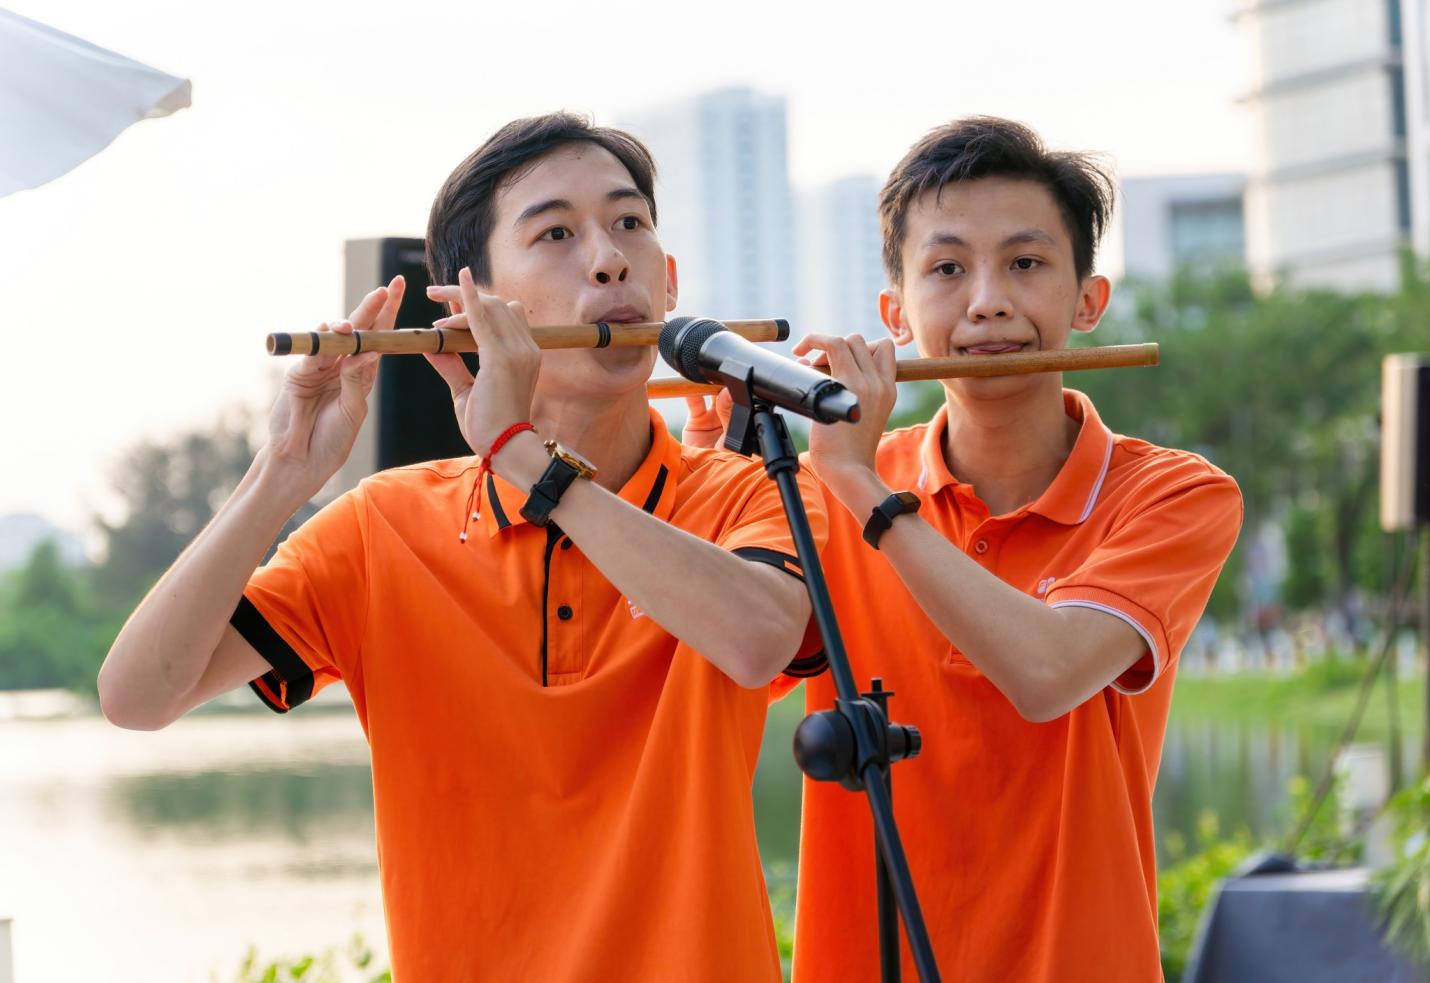 Với Quang (bên trái), việc giải đề Toán như một cuộc dạo chơi sẽ giúp đạt hiệu quả tốt nhất